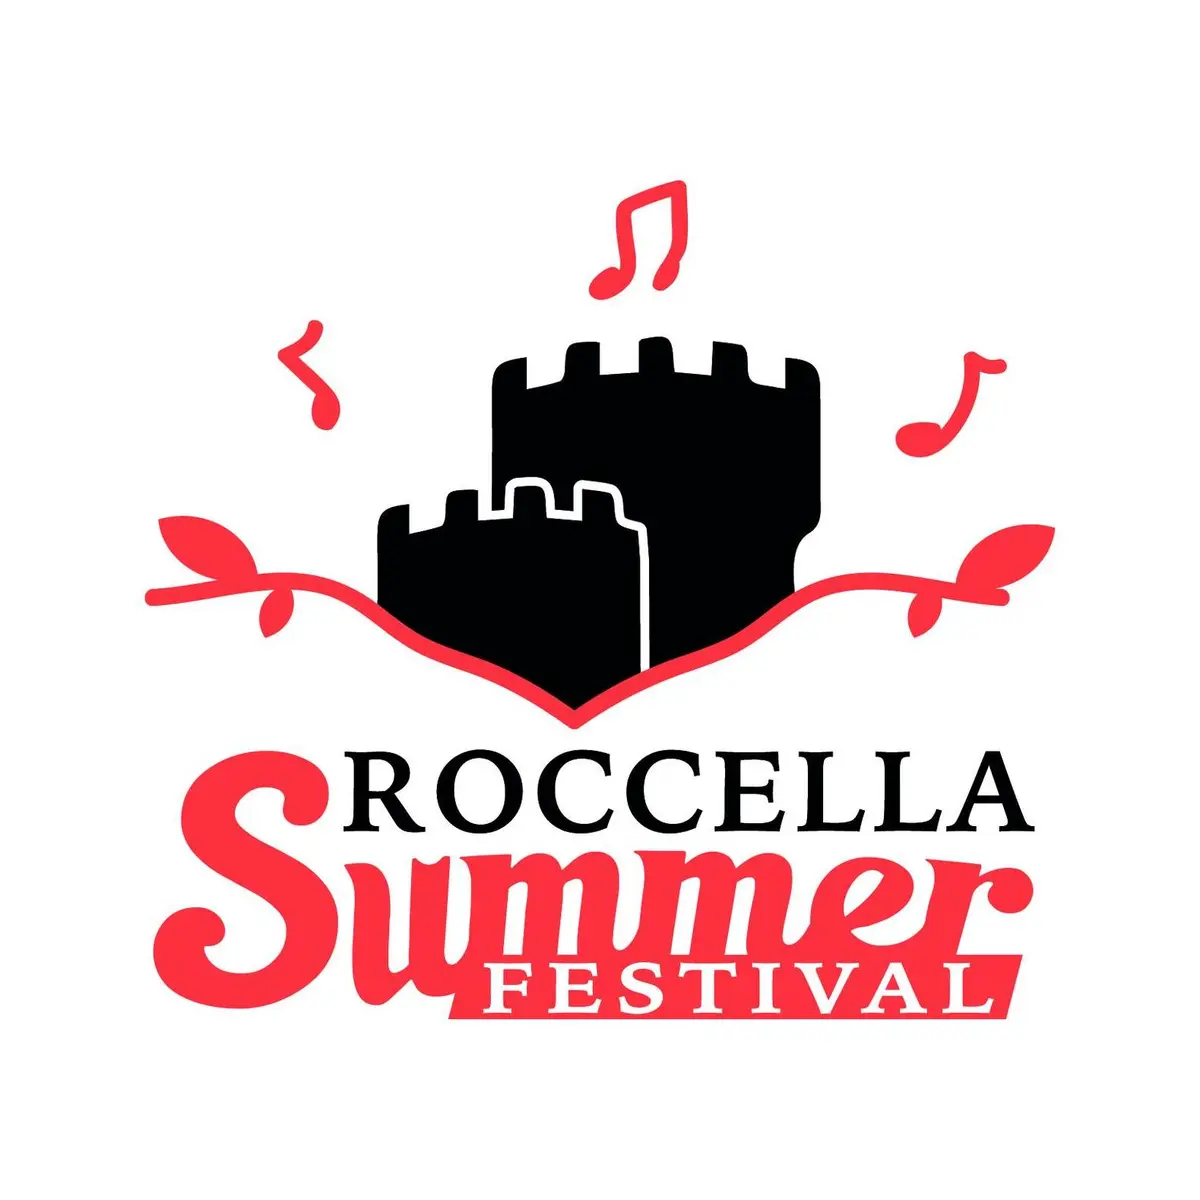 Roccella Summer Festival